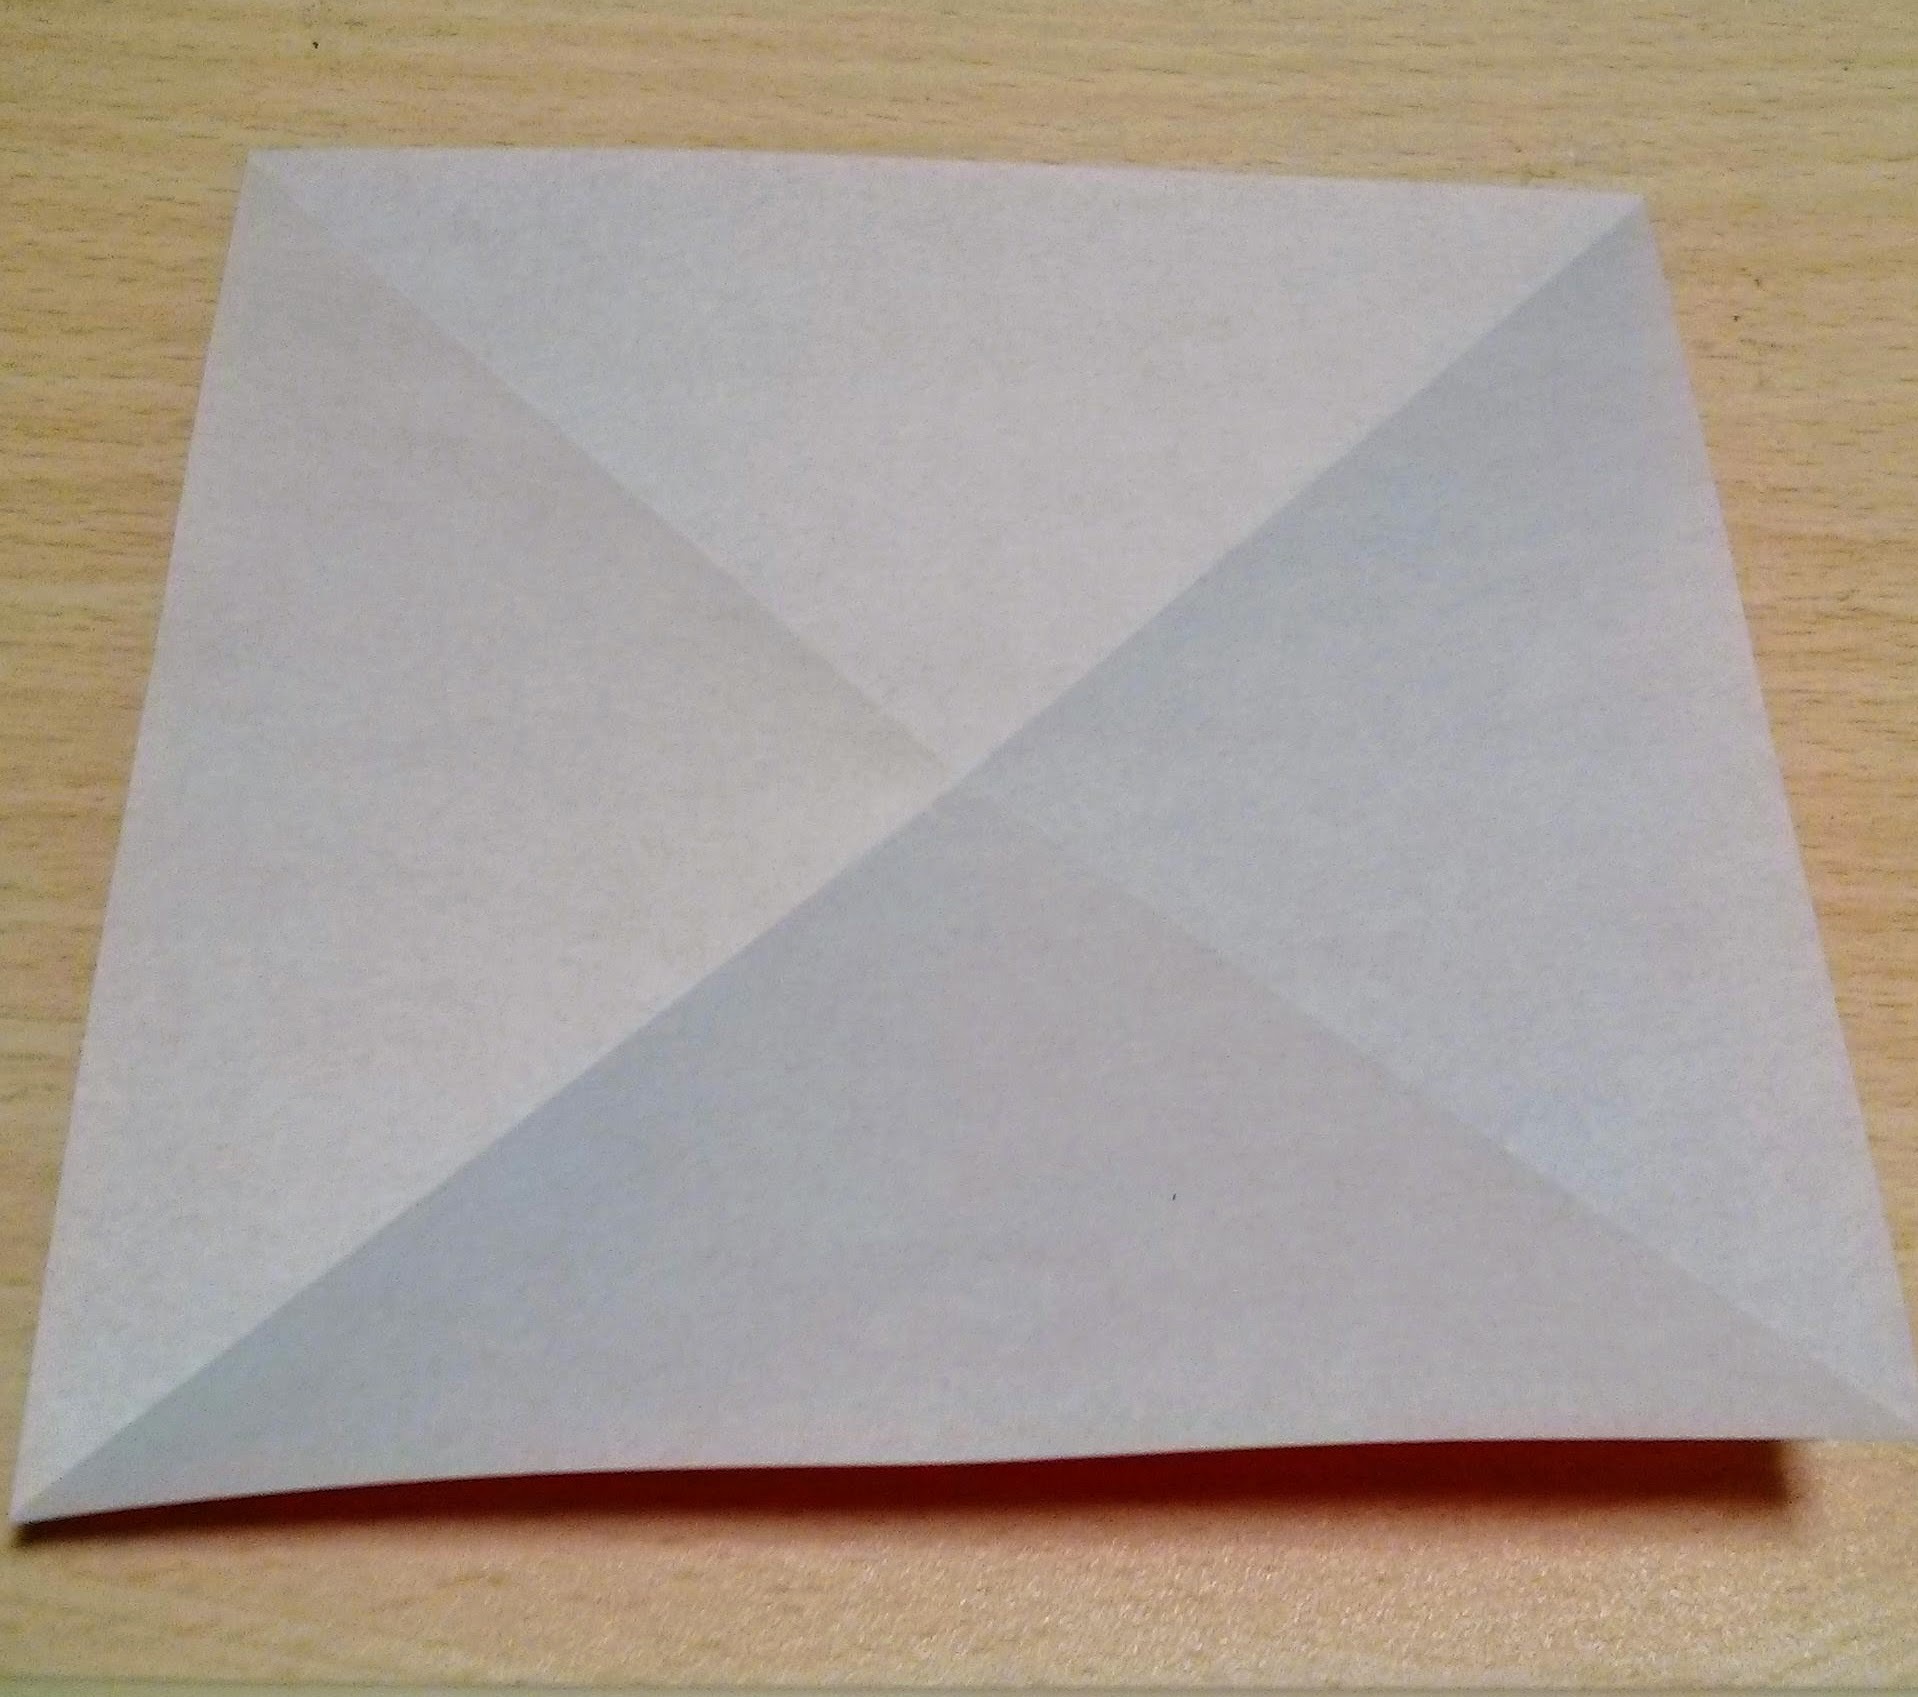 折り紙 アンパンマン の折り方講座 顔から体まで全身の作り方とは 2ページ目 暮らし の